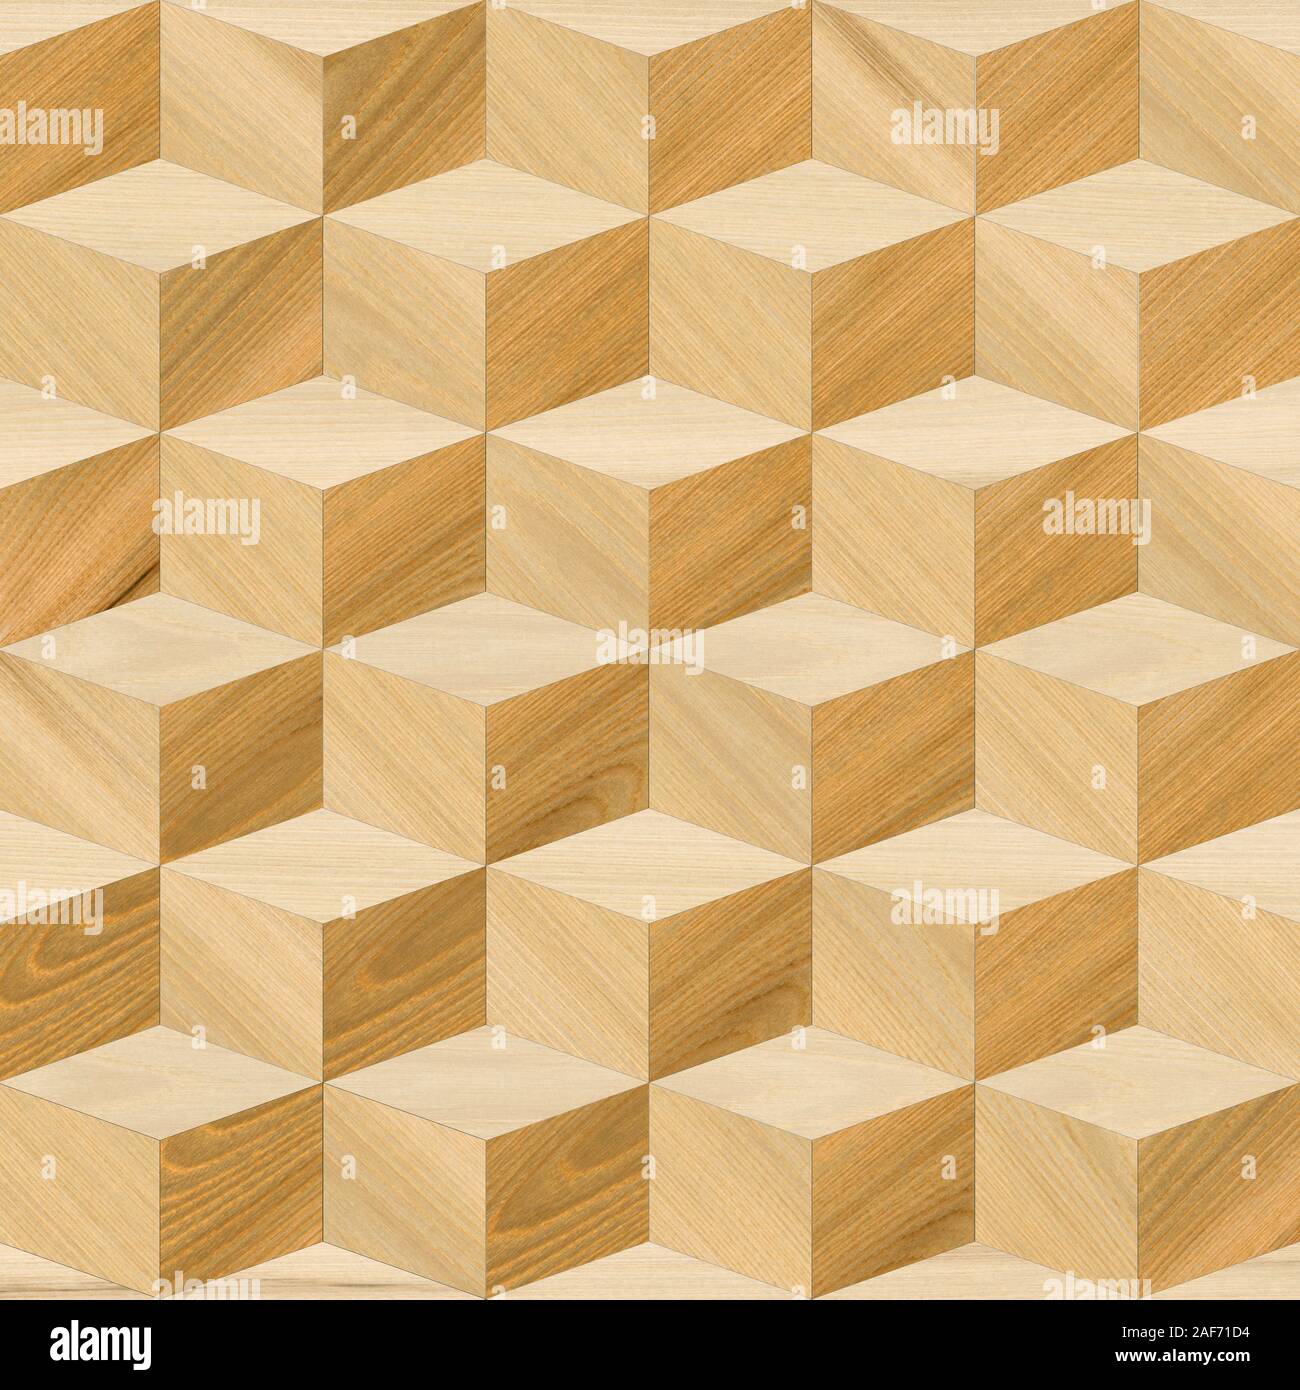 Mẫu hình học gỗ: Bạn yêu thích cảm giác tự tay làm các sản phẩm từ gỗ? Hãy xem qua mẫu hình học gỗ để tìm kiếm ý tưởng và khởi đầu cho dự án nghệ thuật của bạn. Các mô hình gỗ thủ công sẽ không chỉ thư giãn cho bạn mà còn truyền cảm hứng và niềm đam mê.